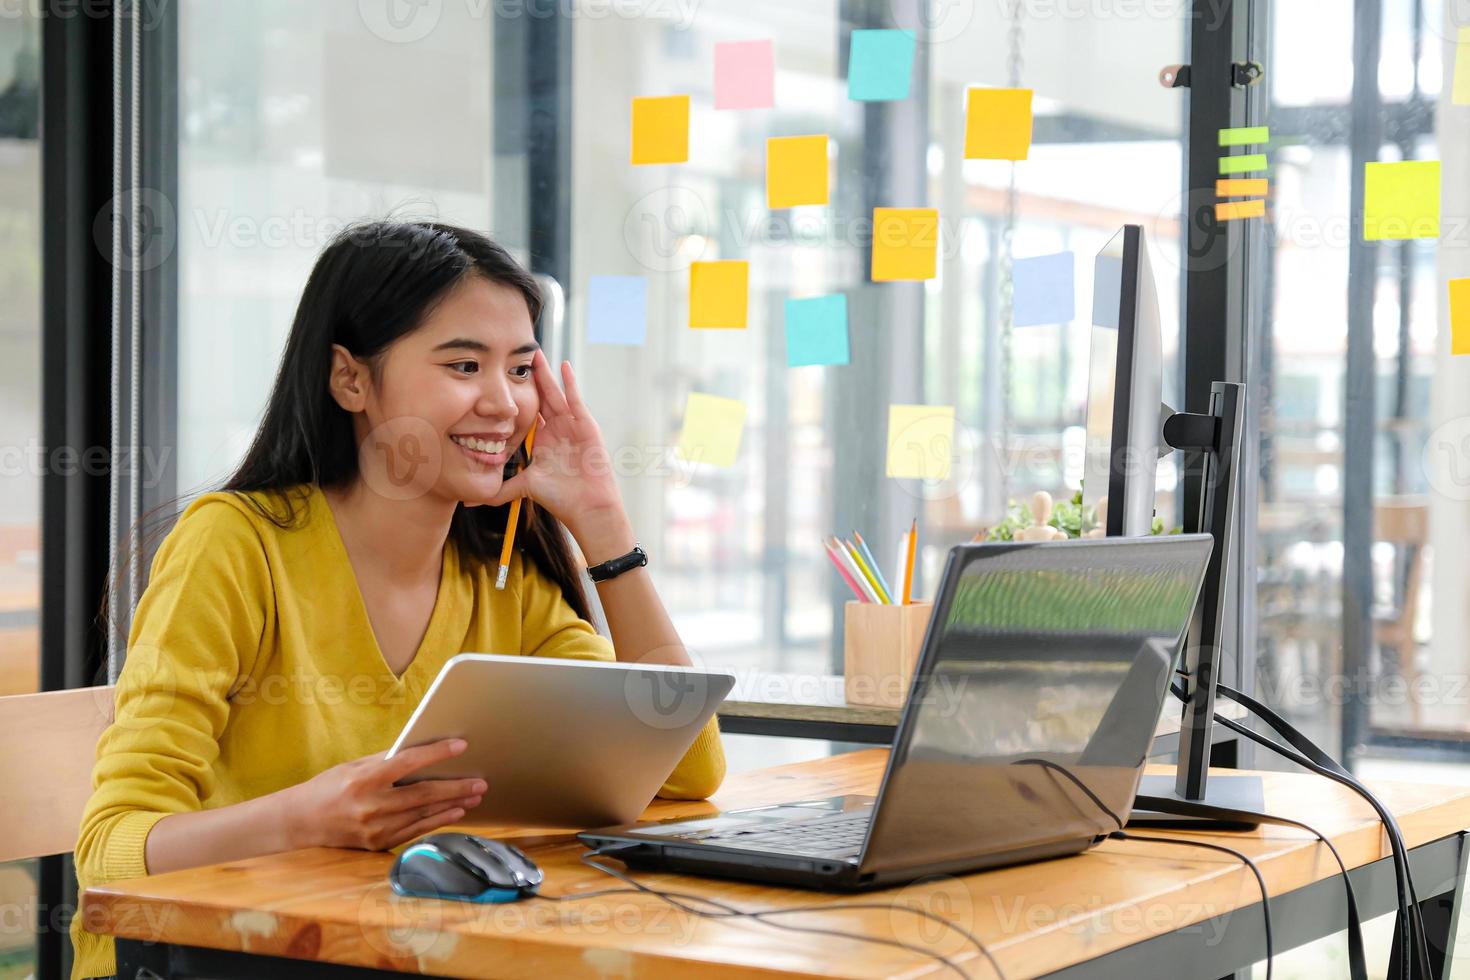 programmatrice asiatica, che indossa una maglietta gialla, guarda lo schermo del laptop, tiene in mano un tablet e una matita. sembrava felice. foto